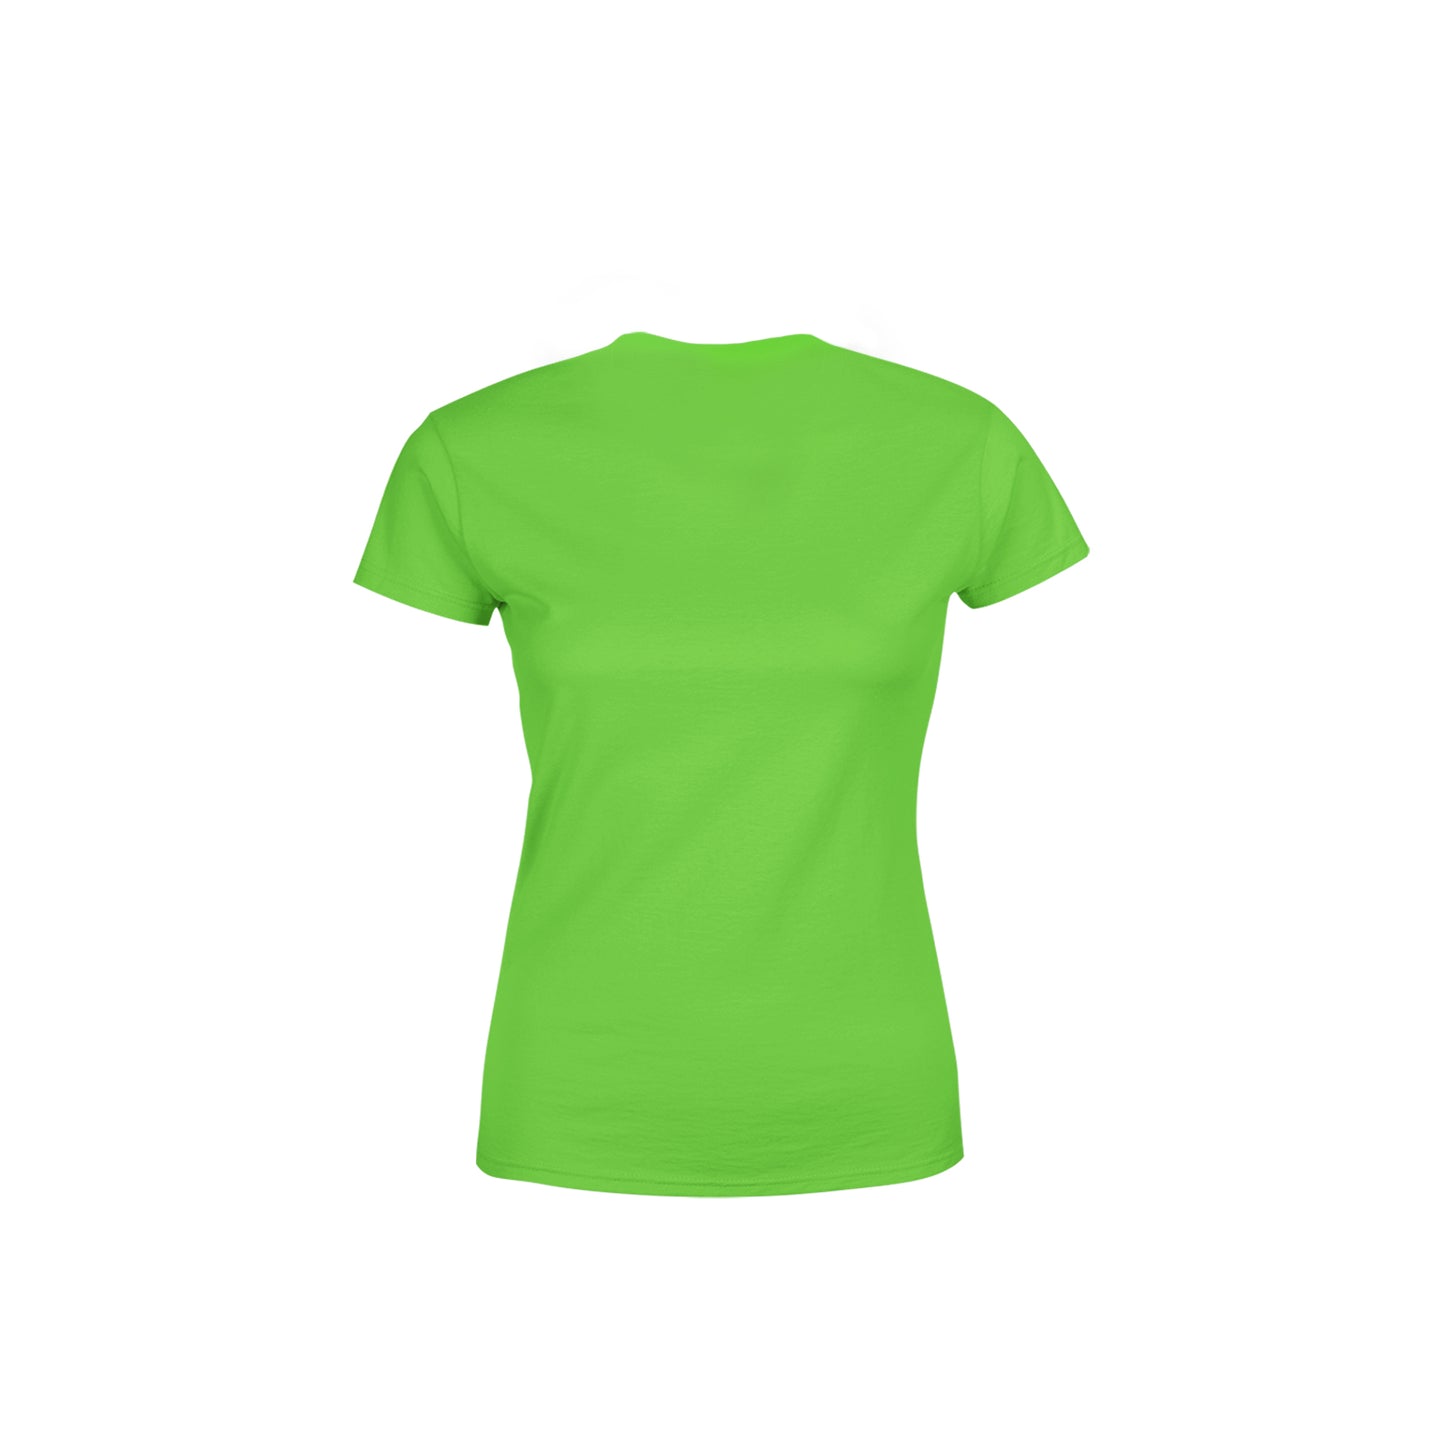 25 Number Women's T-Shirt (Liril Green)